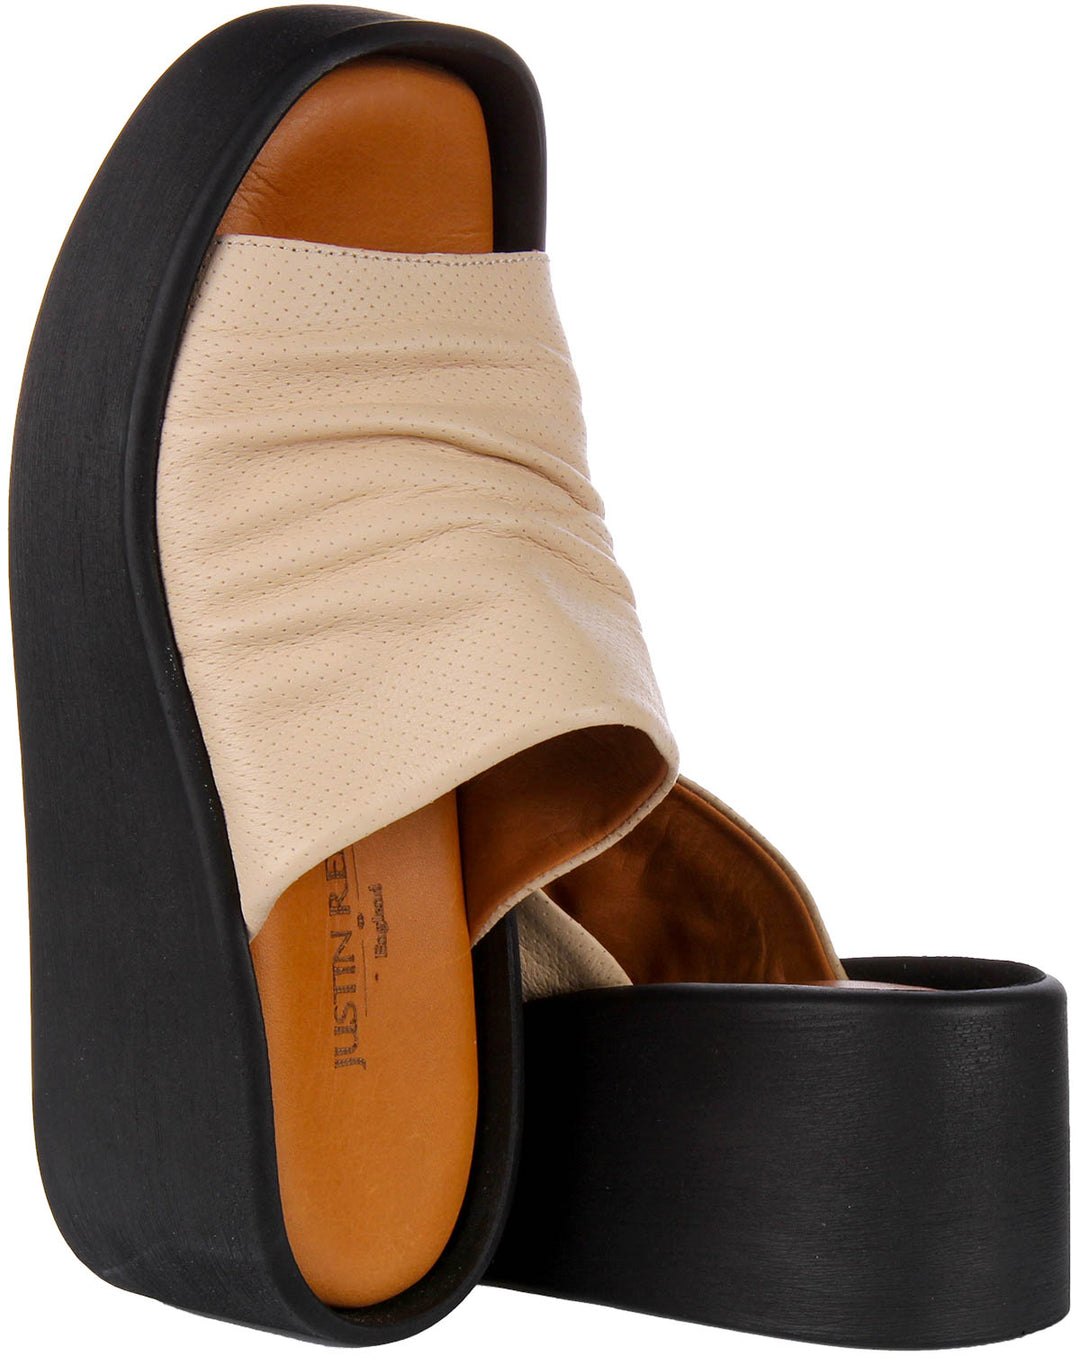 Hila Wedge Flatform Sandals In Beige Leather